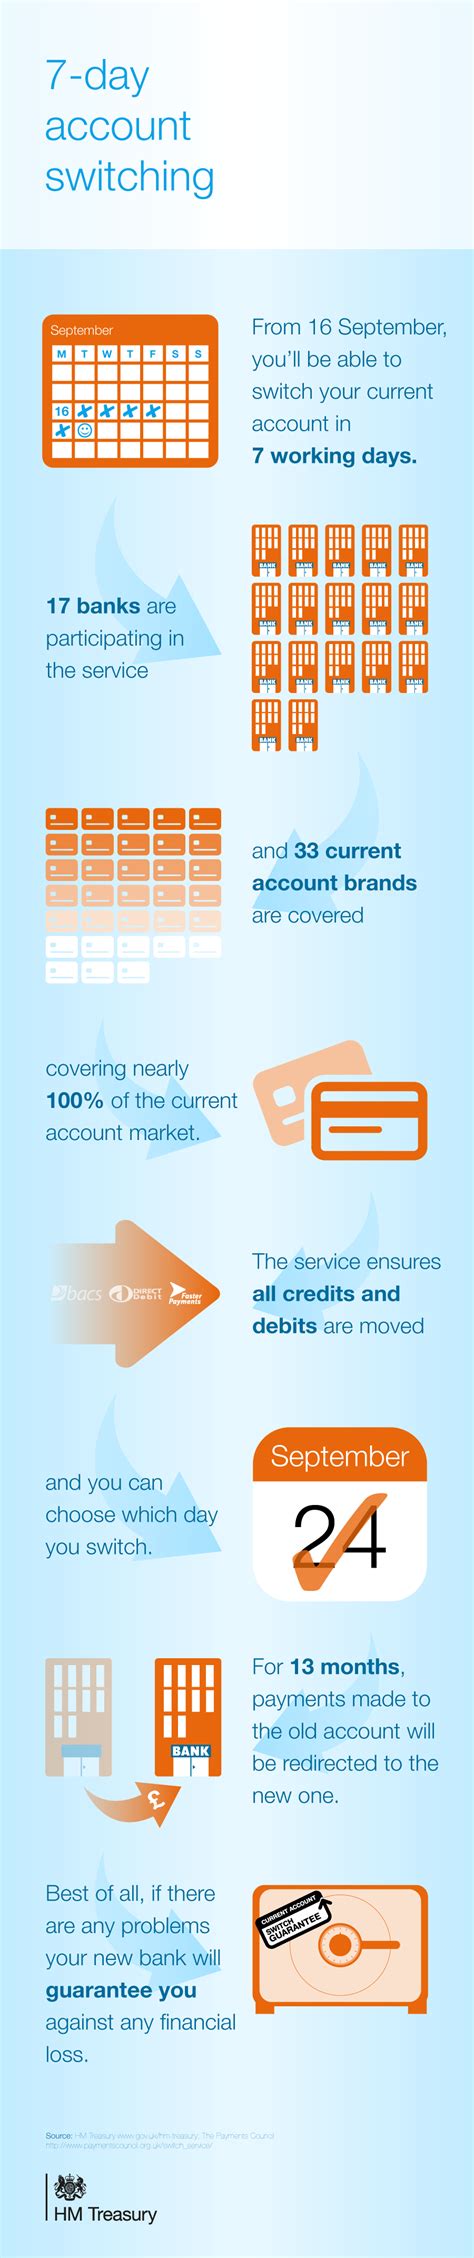 Wir sind in erster linie ein seriöser und zuverlässiger partner in allen fragen rund um die immobilie. All sizes | Bank account switching: infographic | Flickr ...